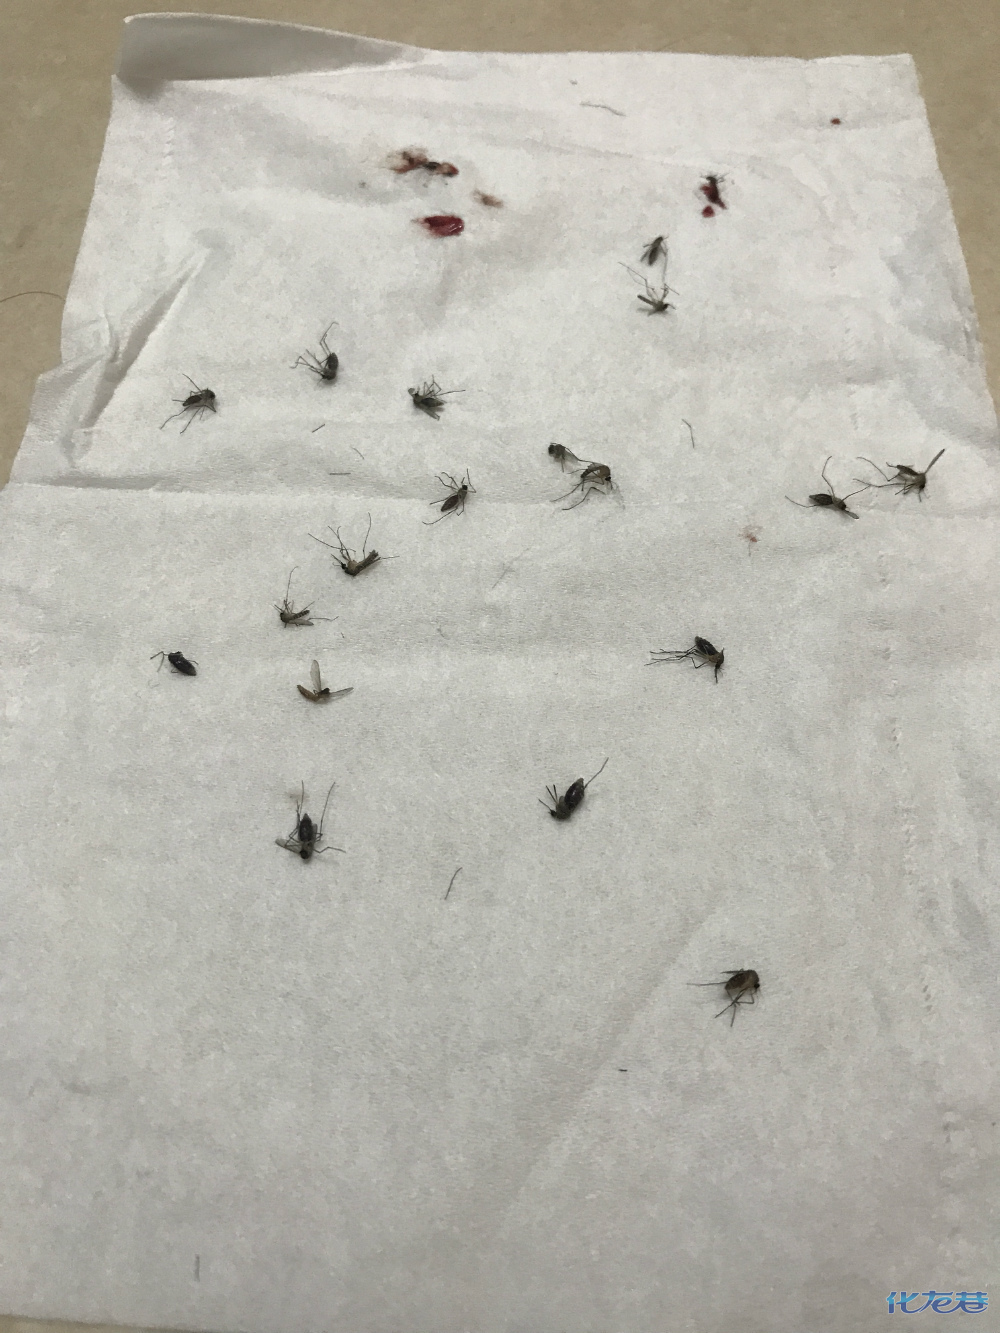 5分钟打死20只吃饱的蚊子,为什么那么多人,蚊子